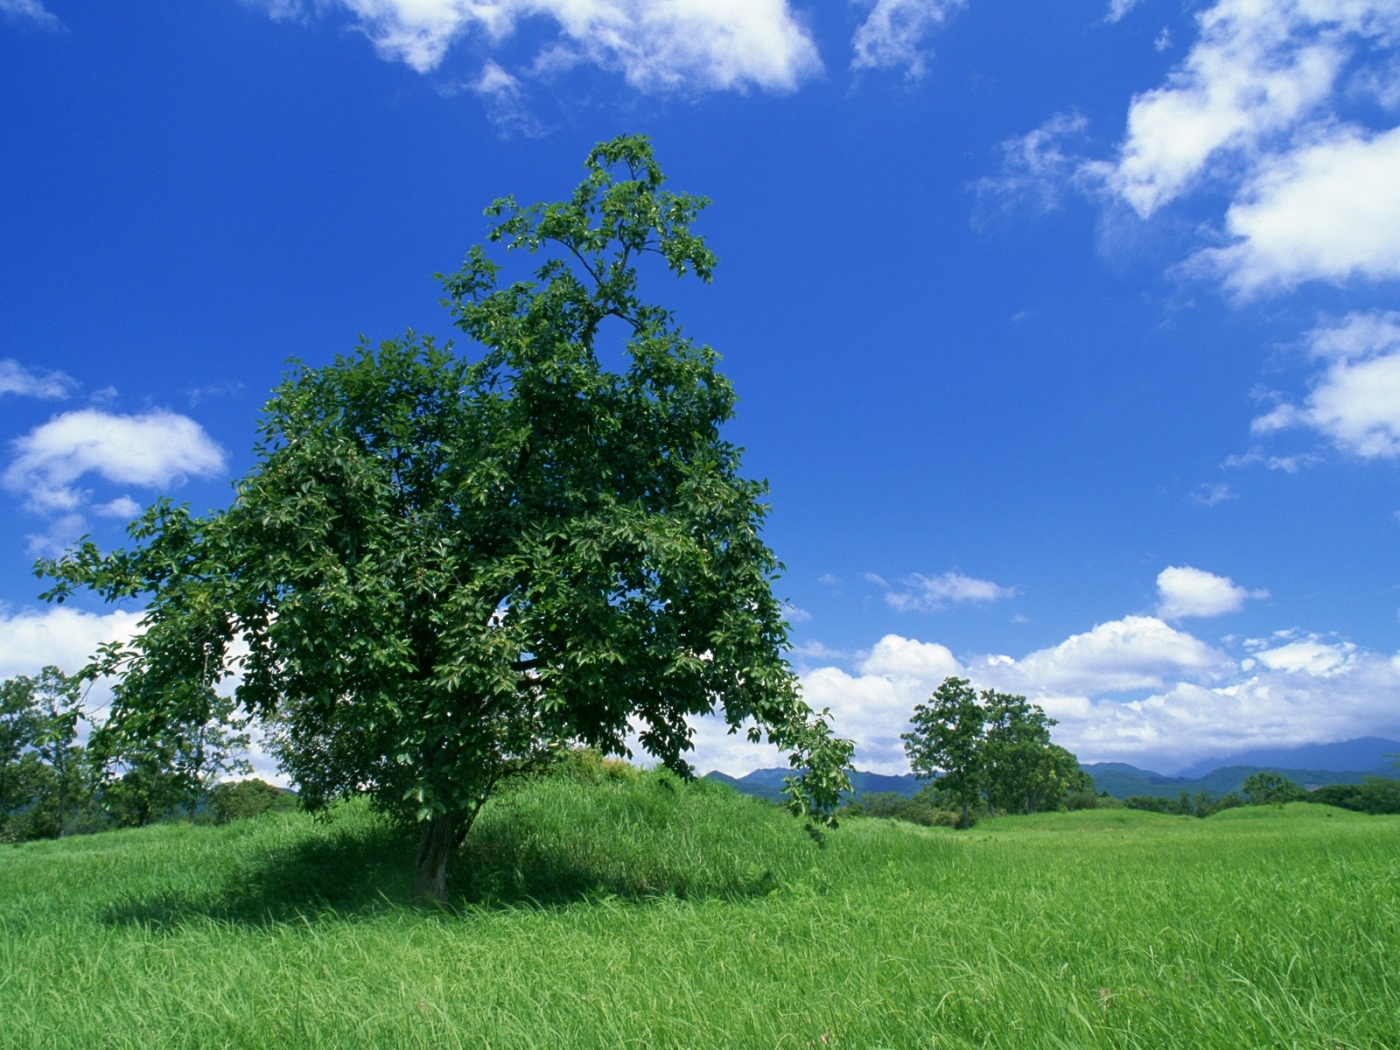 Скачать обои бесплатно Облака, Деревья, Небо, Пейзаж картинка на рабочий стол ПК